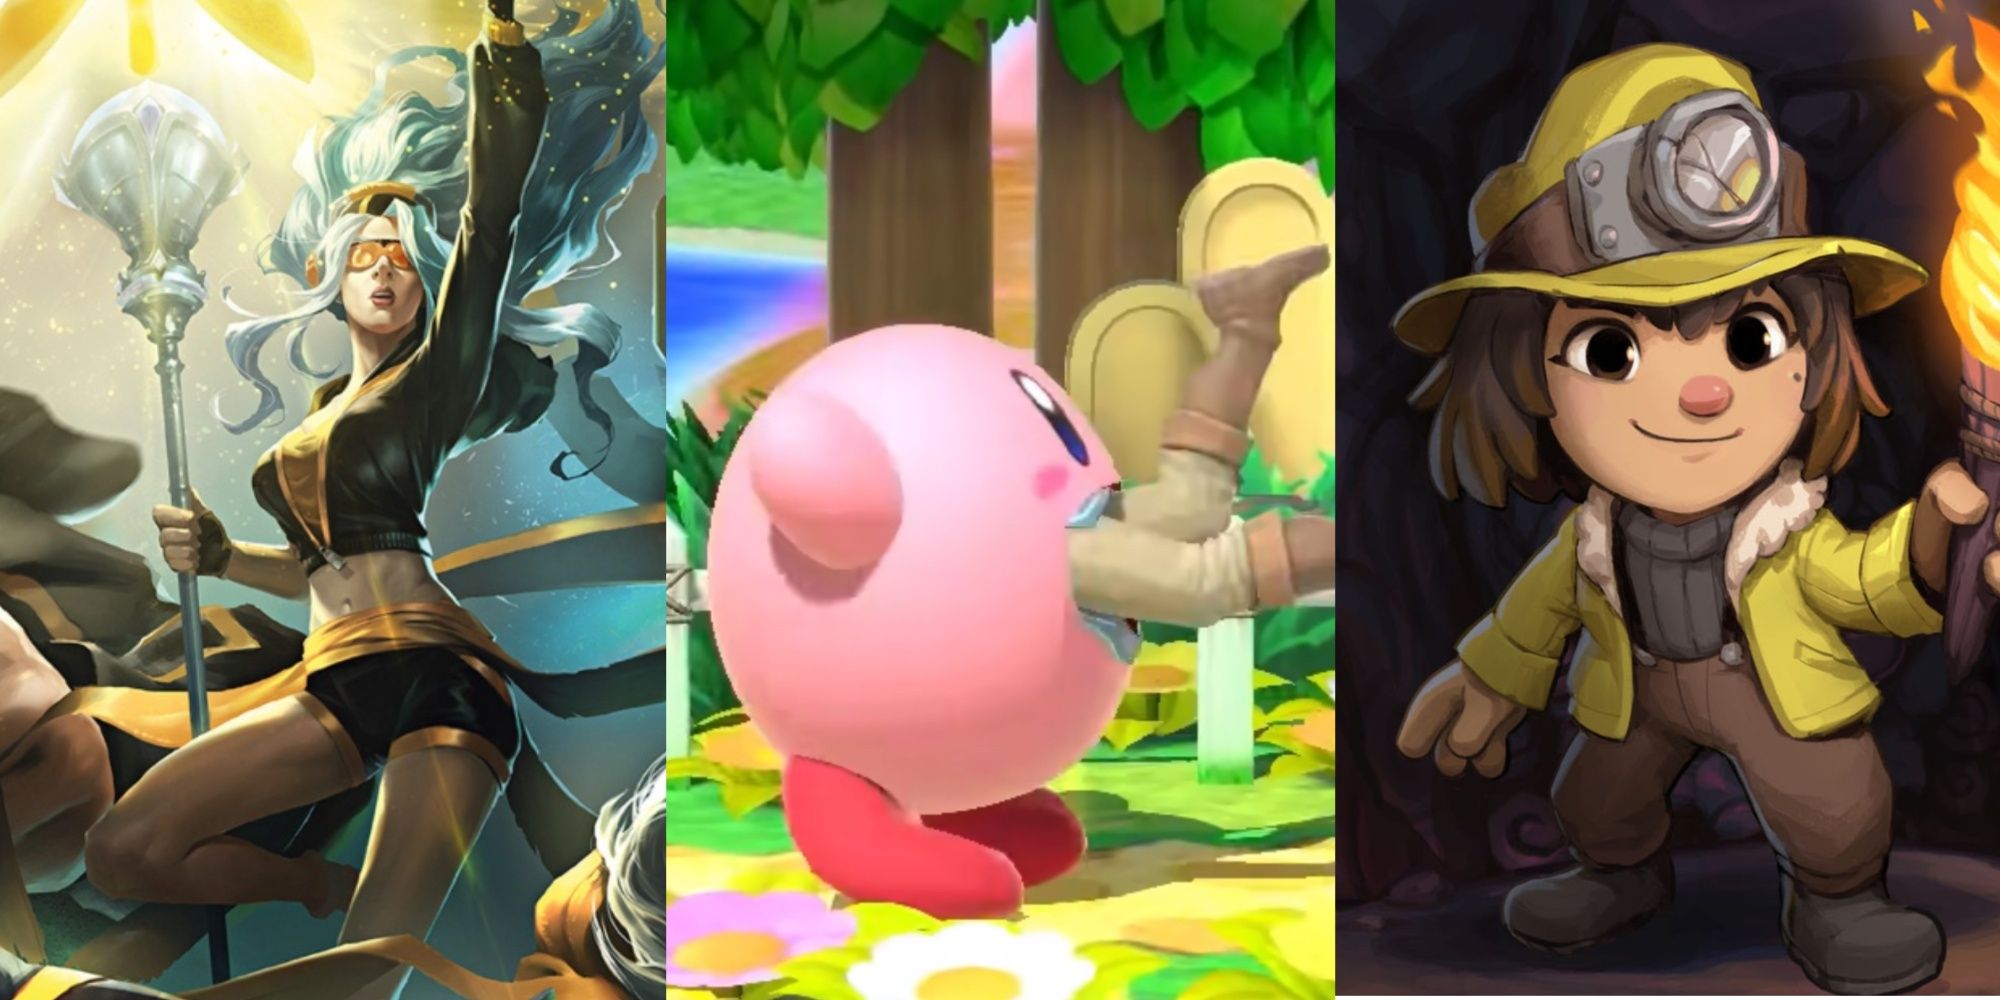 LoL, Kirby. Spelunky 2